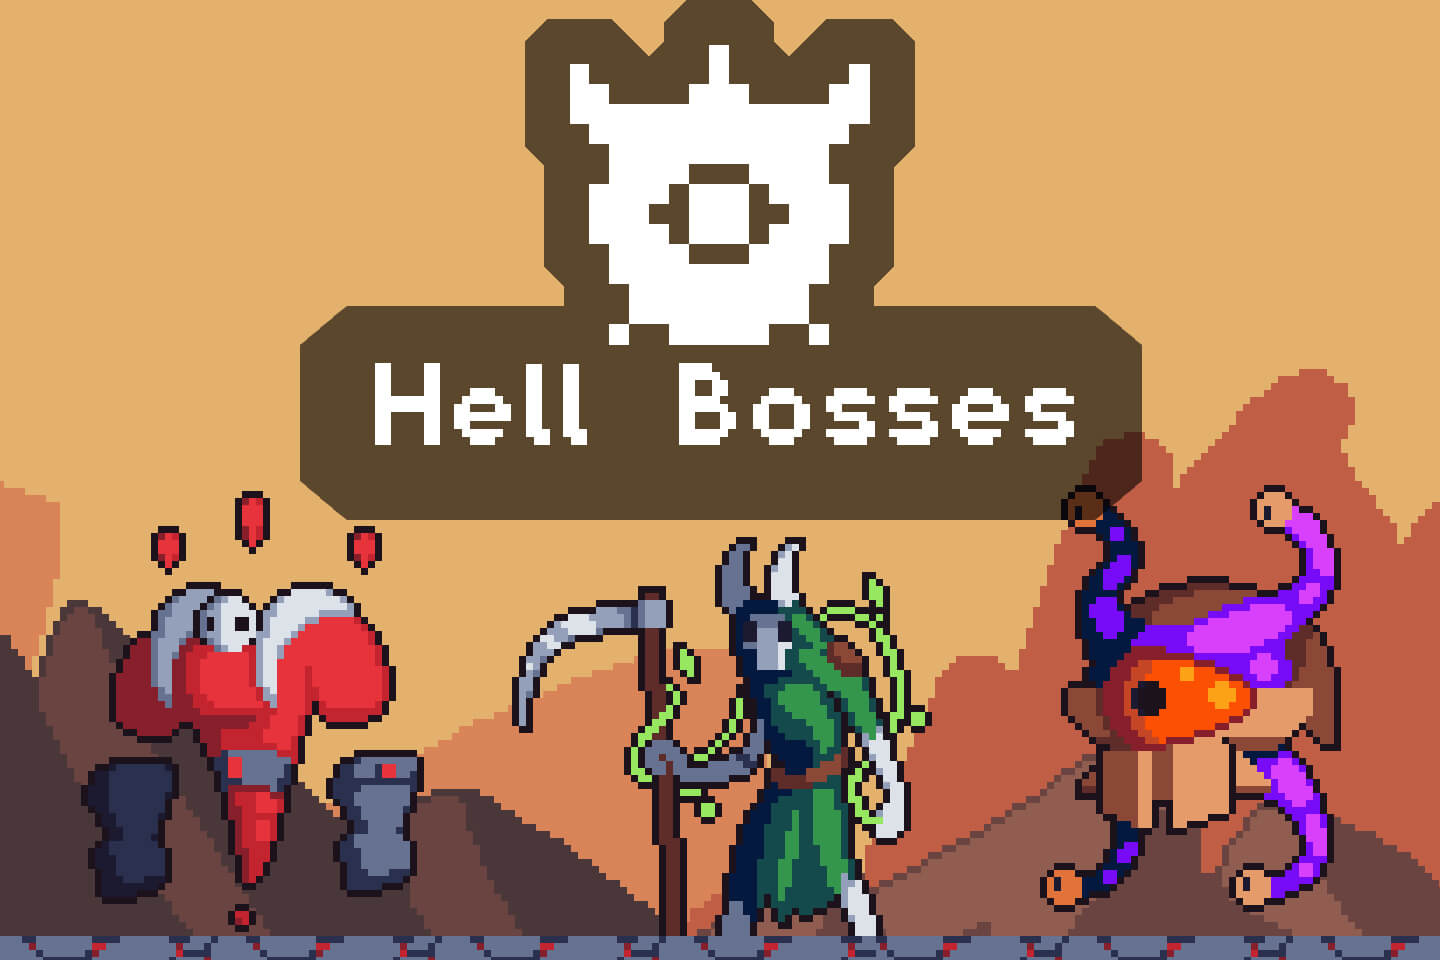 Hell Boss Sprite Sheets Pixel Art